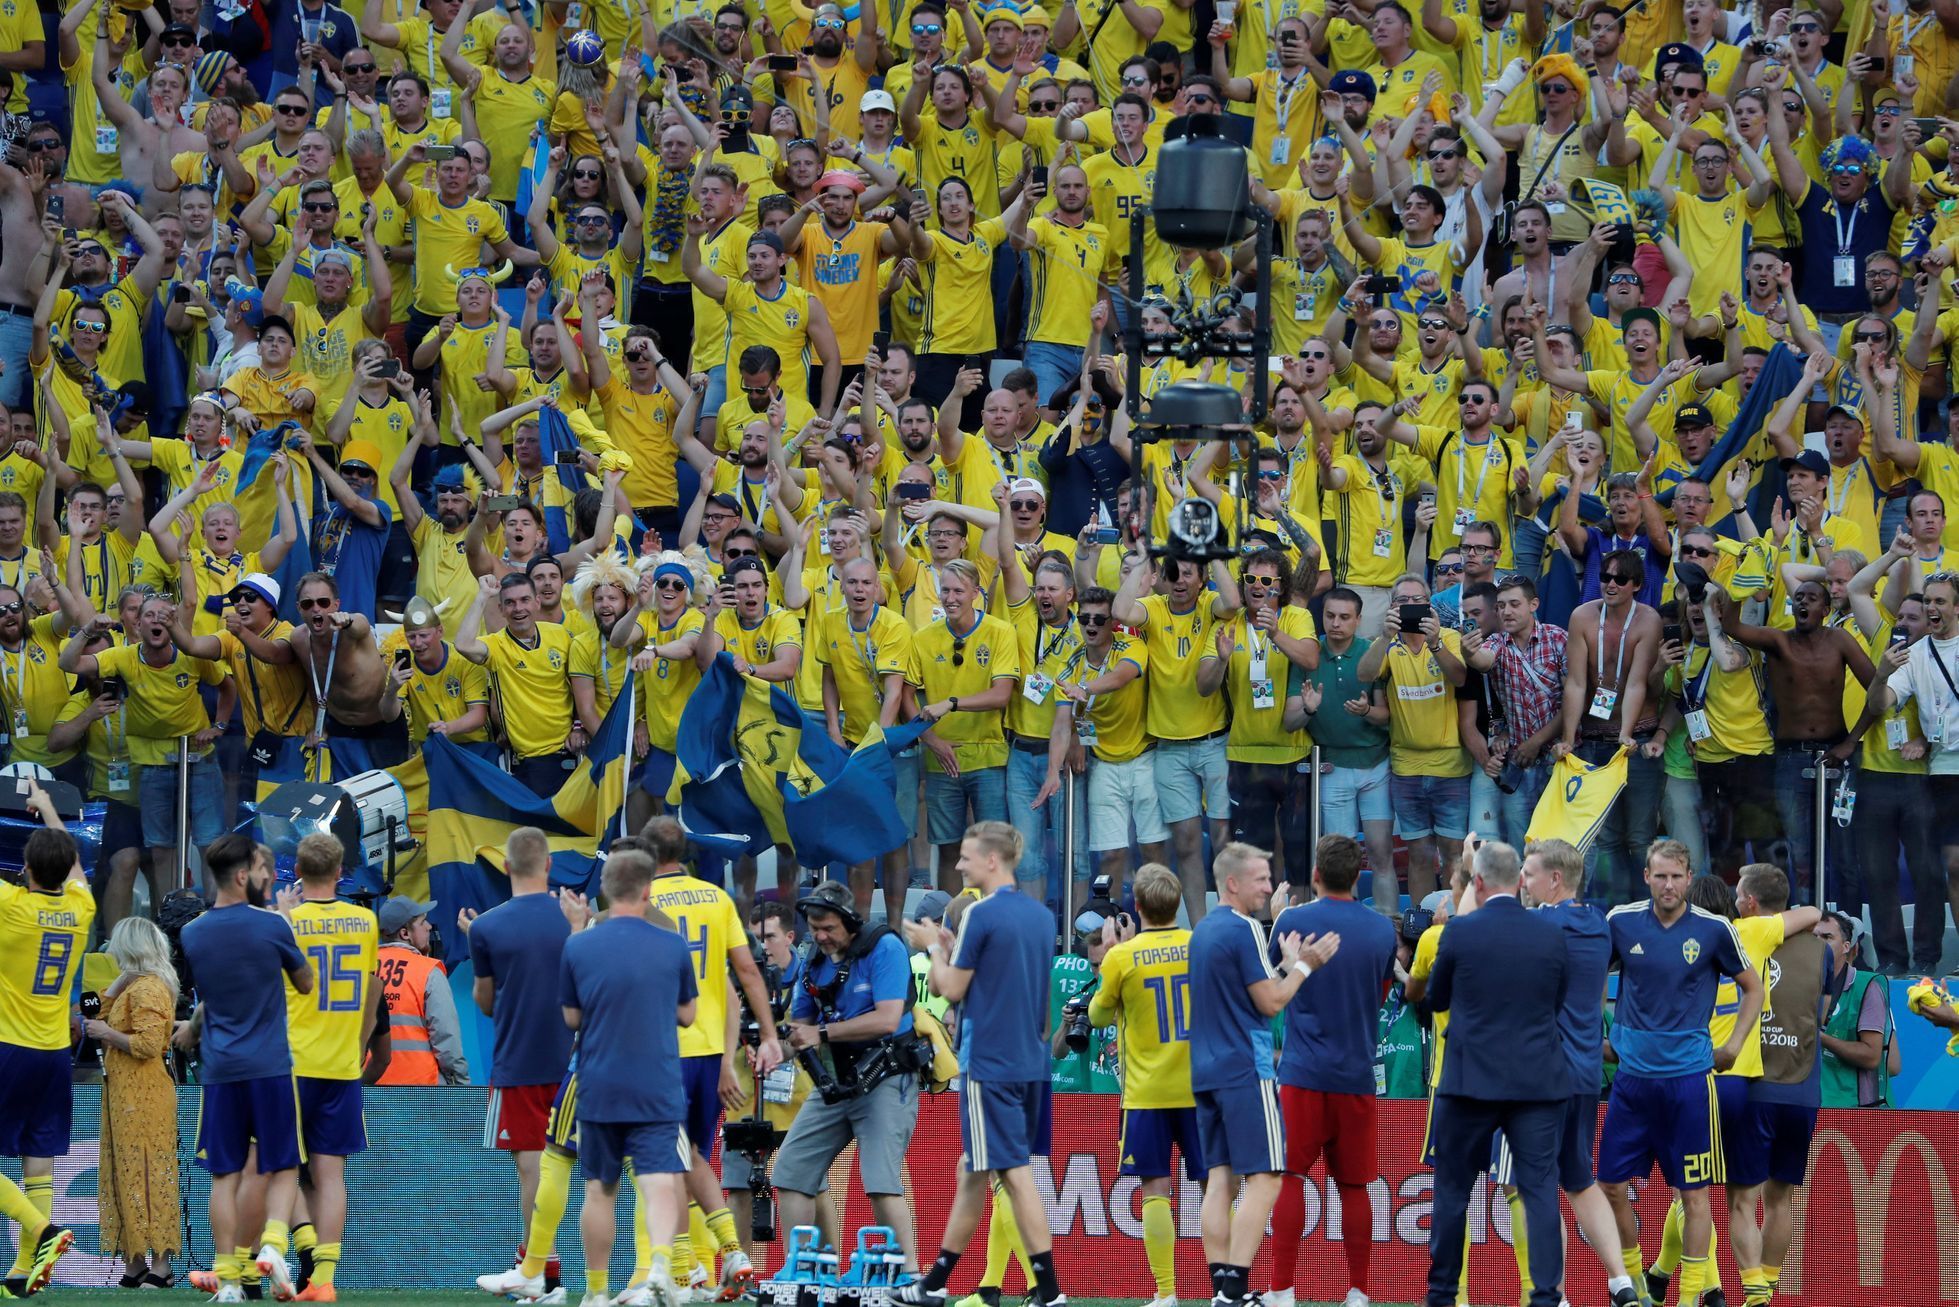 MS ve fotbale 2018: Radost fotbalistů Švédska